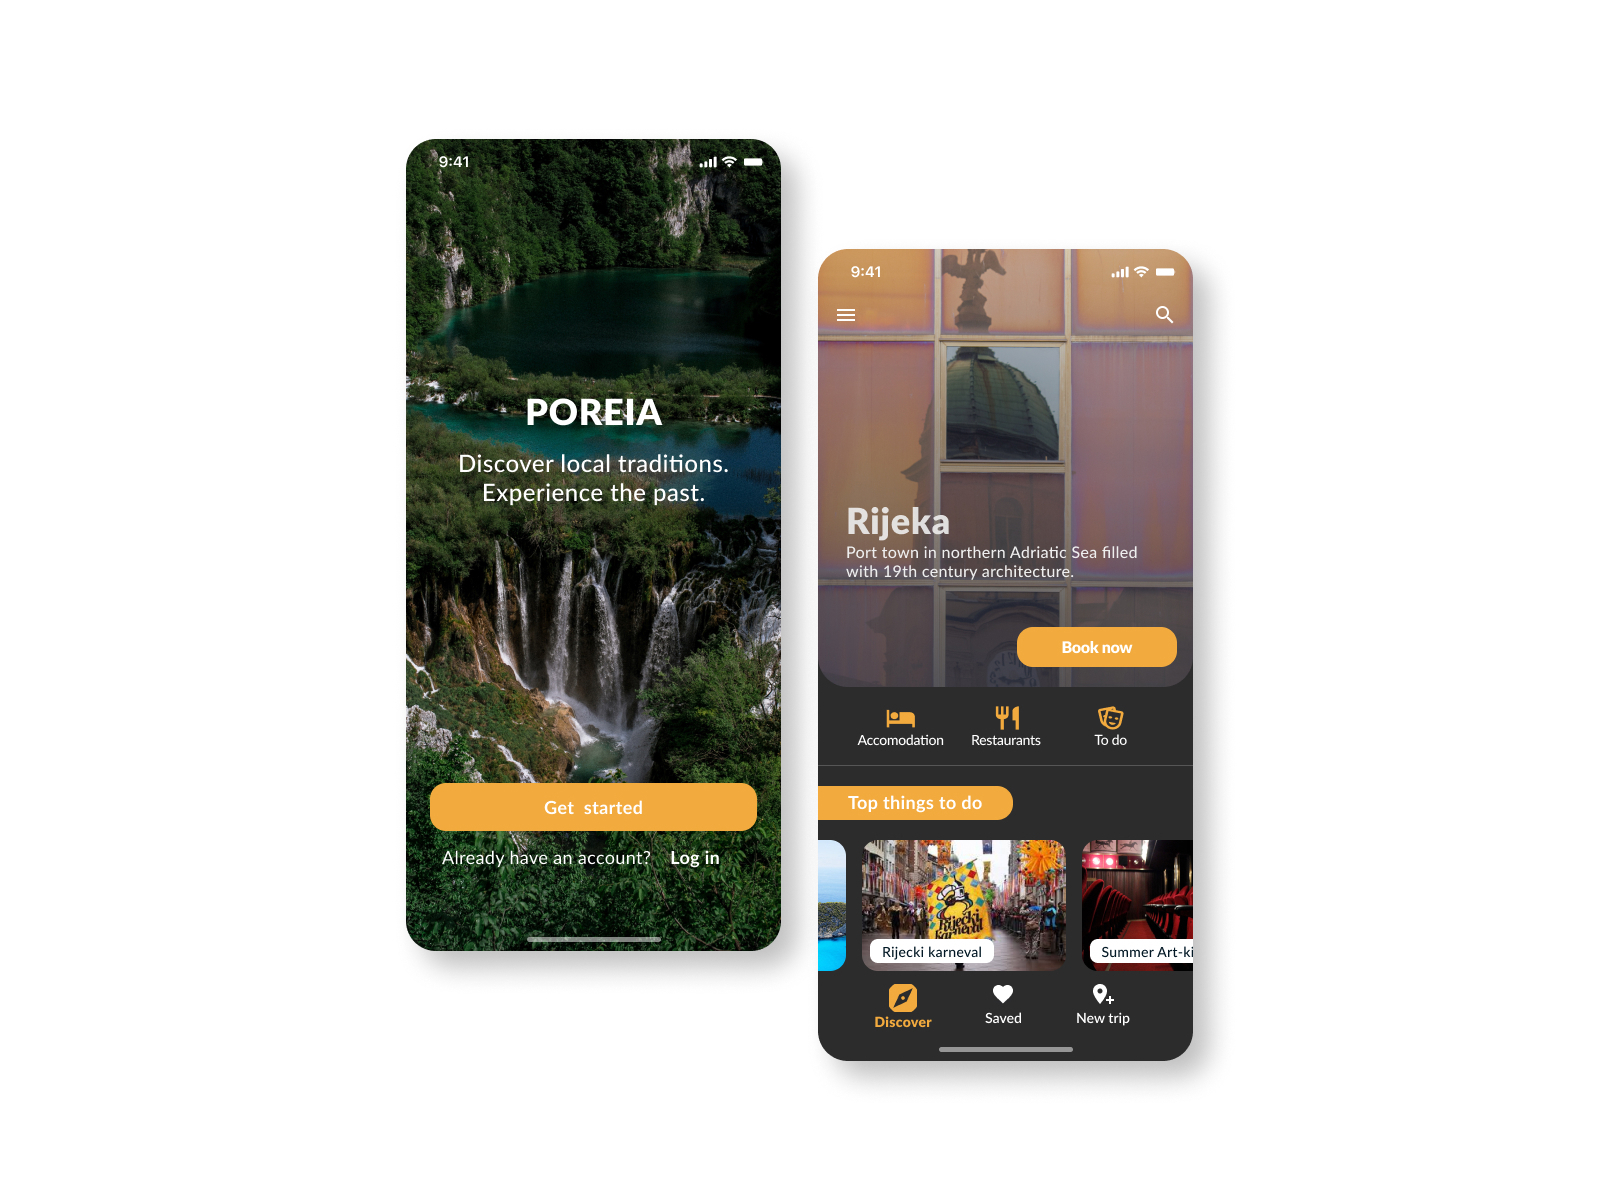 Poreia travel app by Marina Stipic on Dribbble